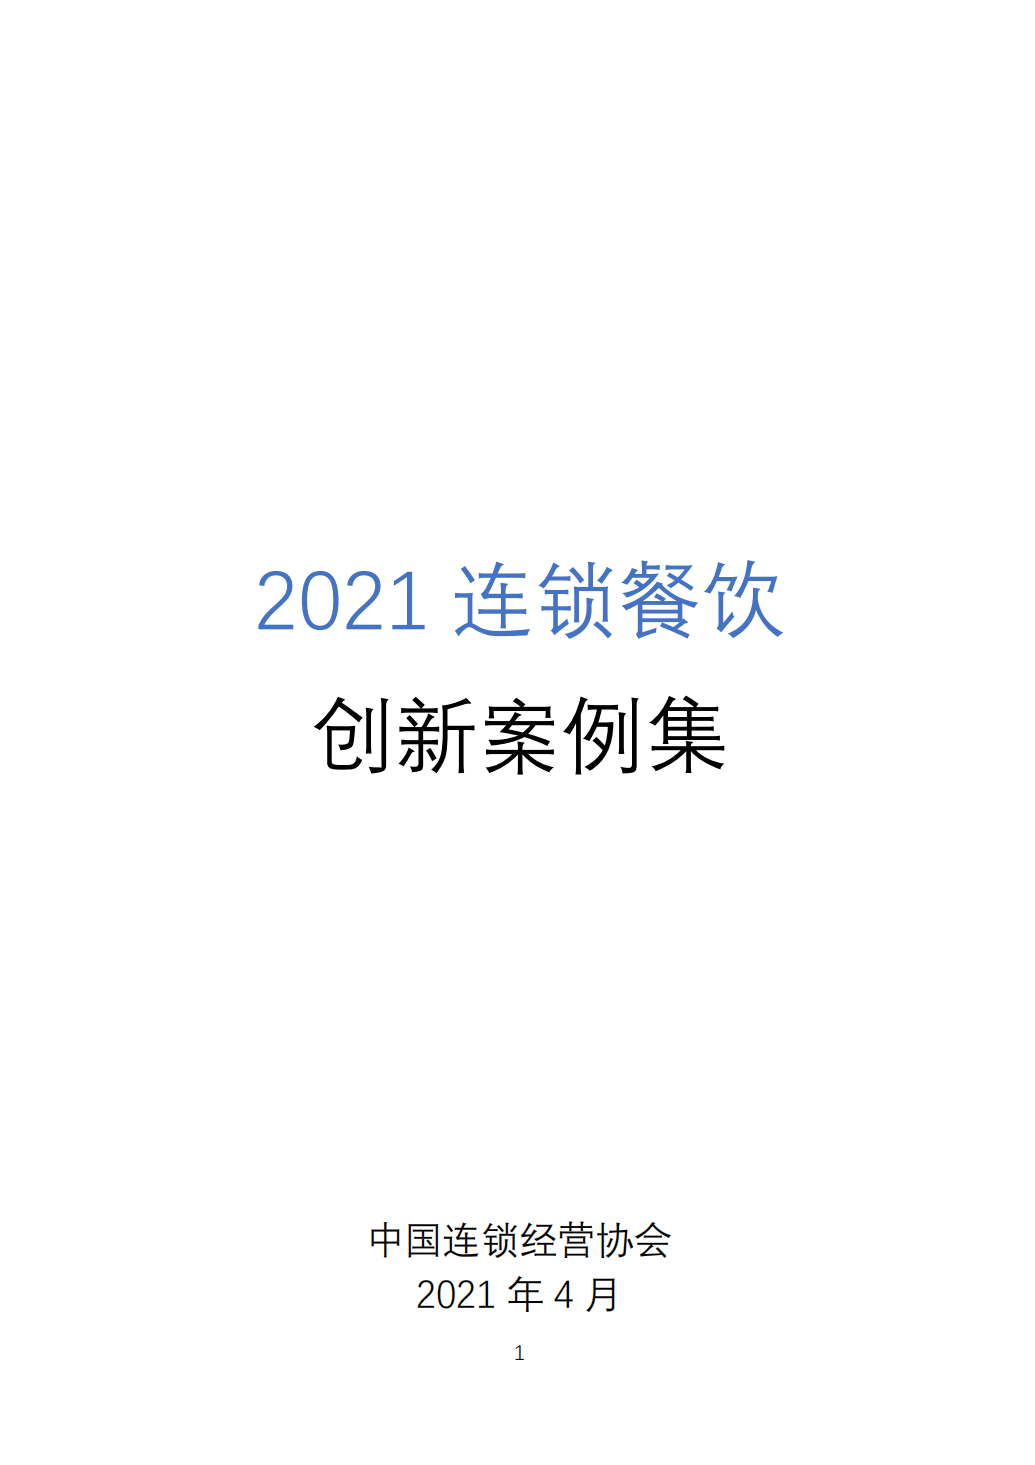 2021连锁餐饮创新案例集-91智库网